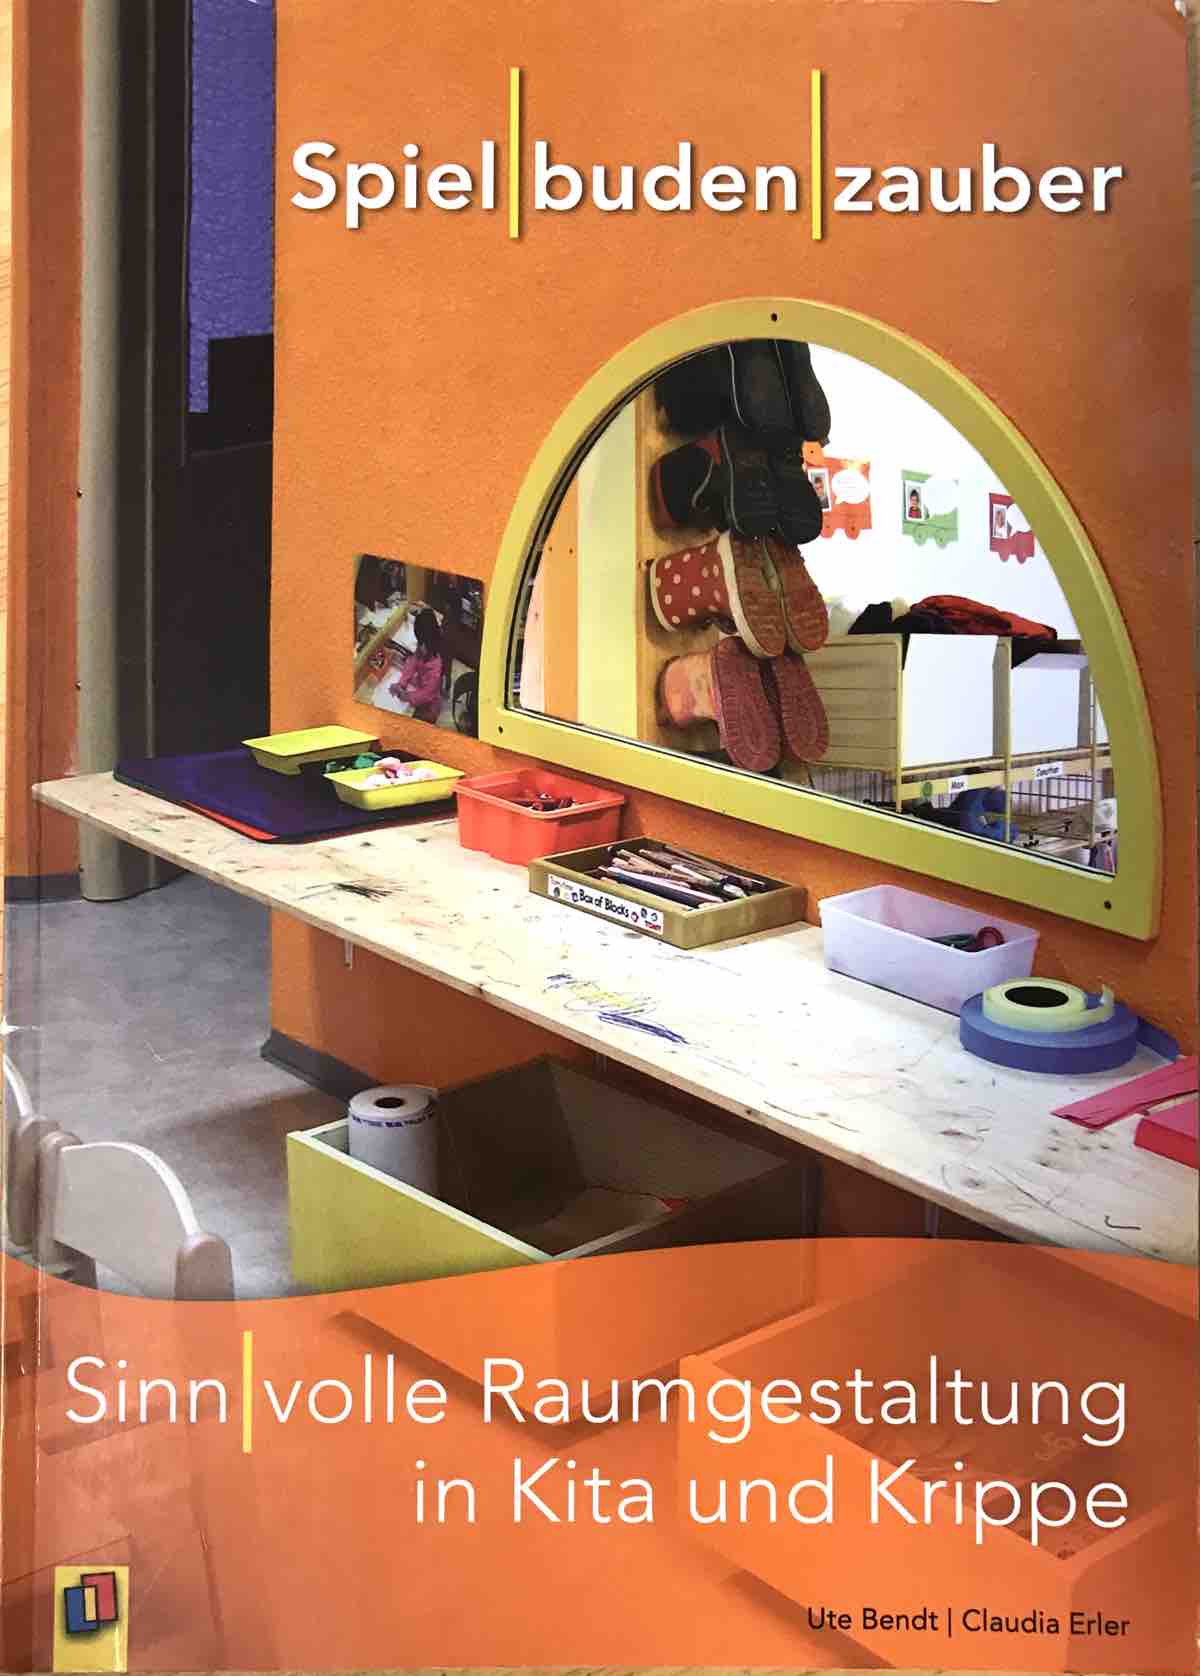 Spielbudenzauber Cover - "Spielbudenzauber" - ein tolles Praxisbuch zum Thema Raumgestaltung